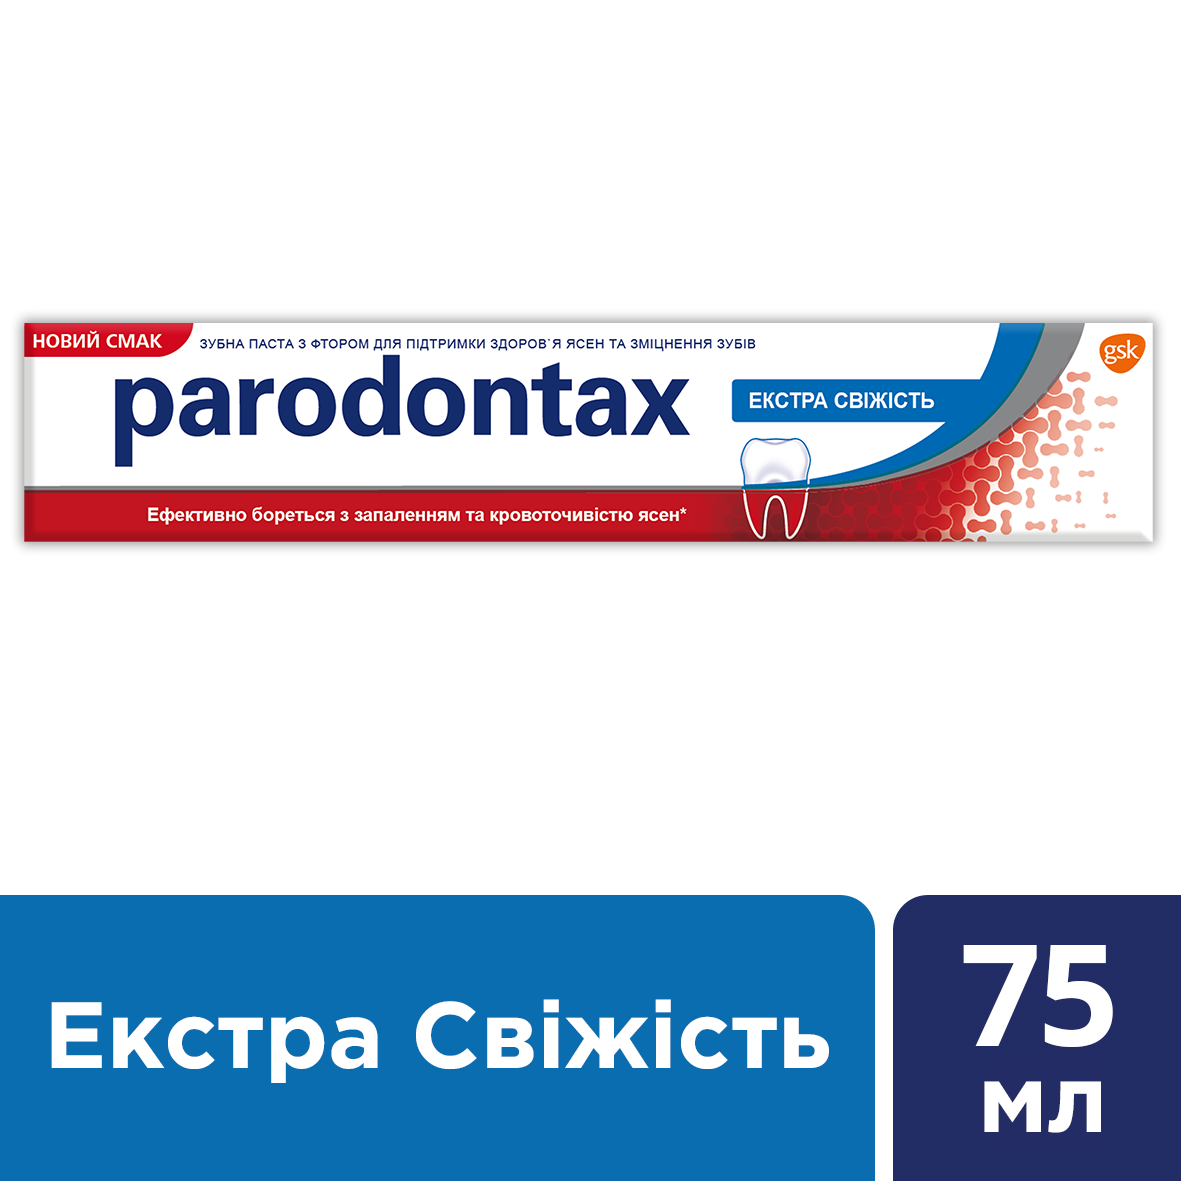 Зубная паста Parodontax Экстра Свежесть, 75 мл - фото 4